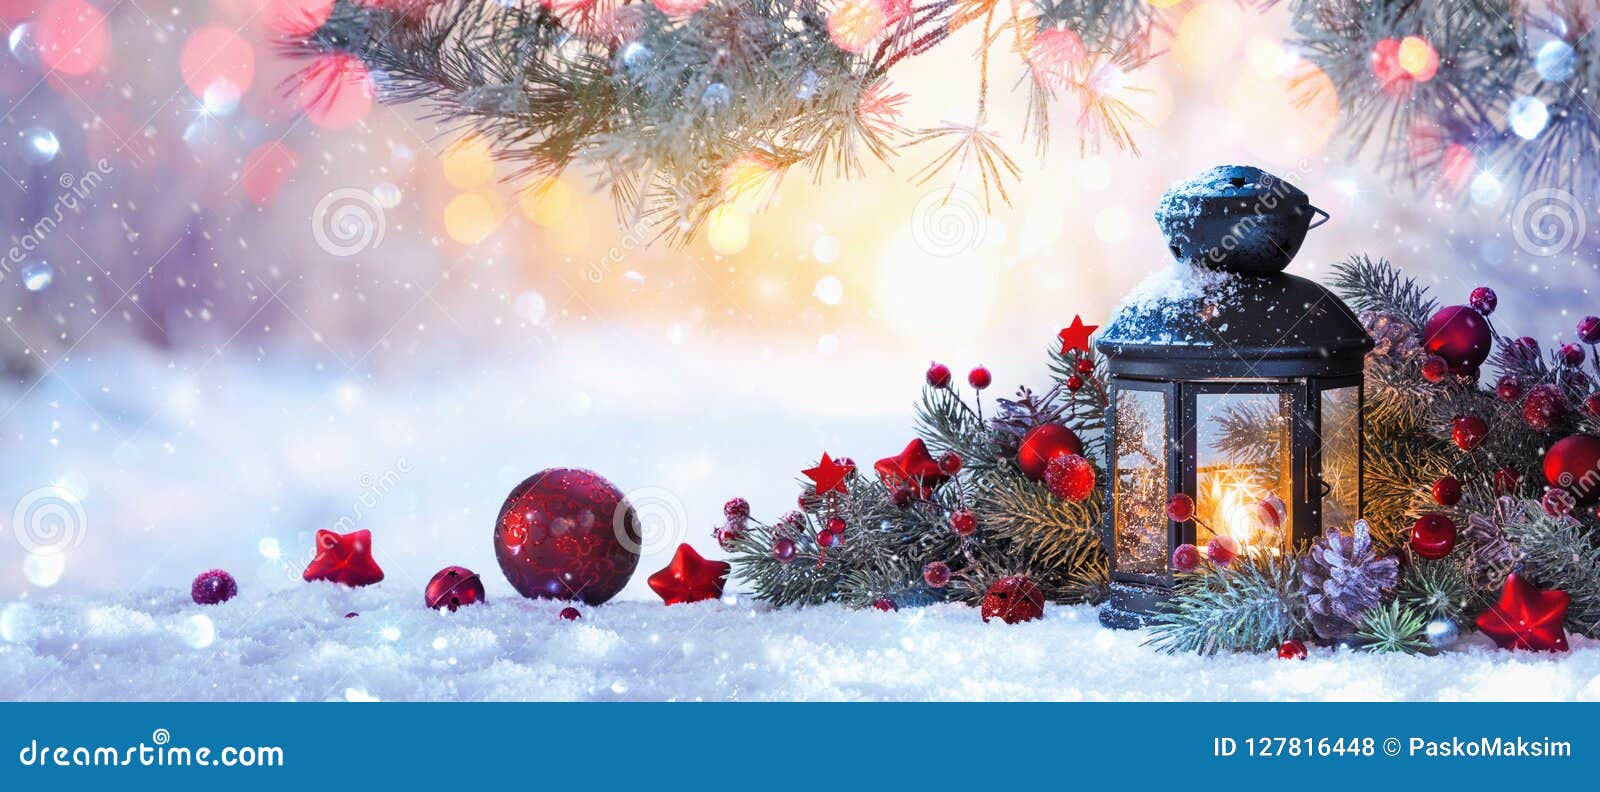 Thưởng thức bầu không khí Giáng sinh đúng chuẩn tại nhà với đèn lồng Giáng sinh lung linh, sáng tạo và đầy màu sắc! Hãy xem ảnh đèn lồng Giáng sinh này để cảm nhận vẻ đẹp truyền thống nhưng đầy mới lạ của ngày lễ Noel này nhé.